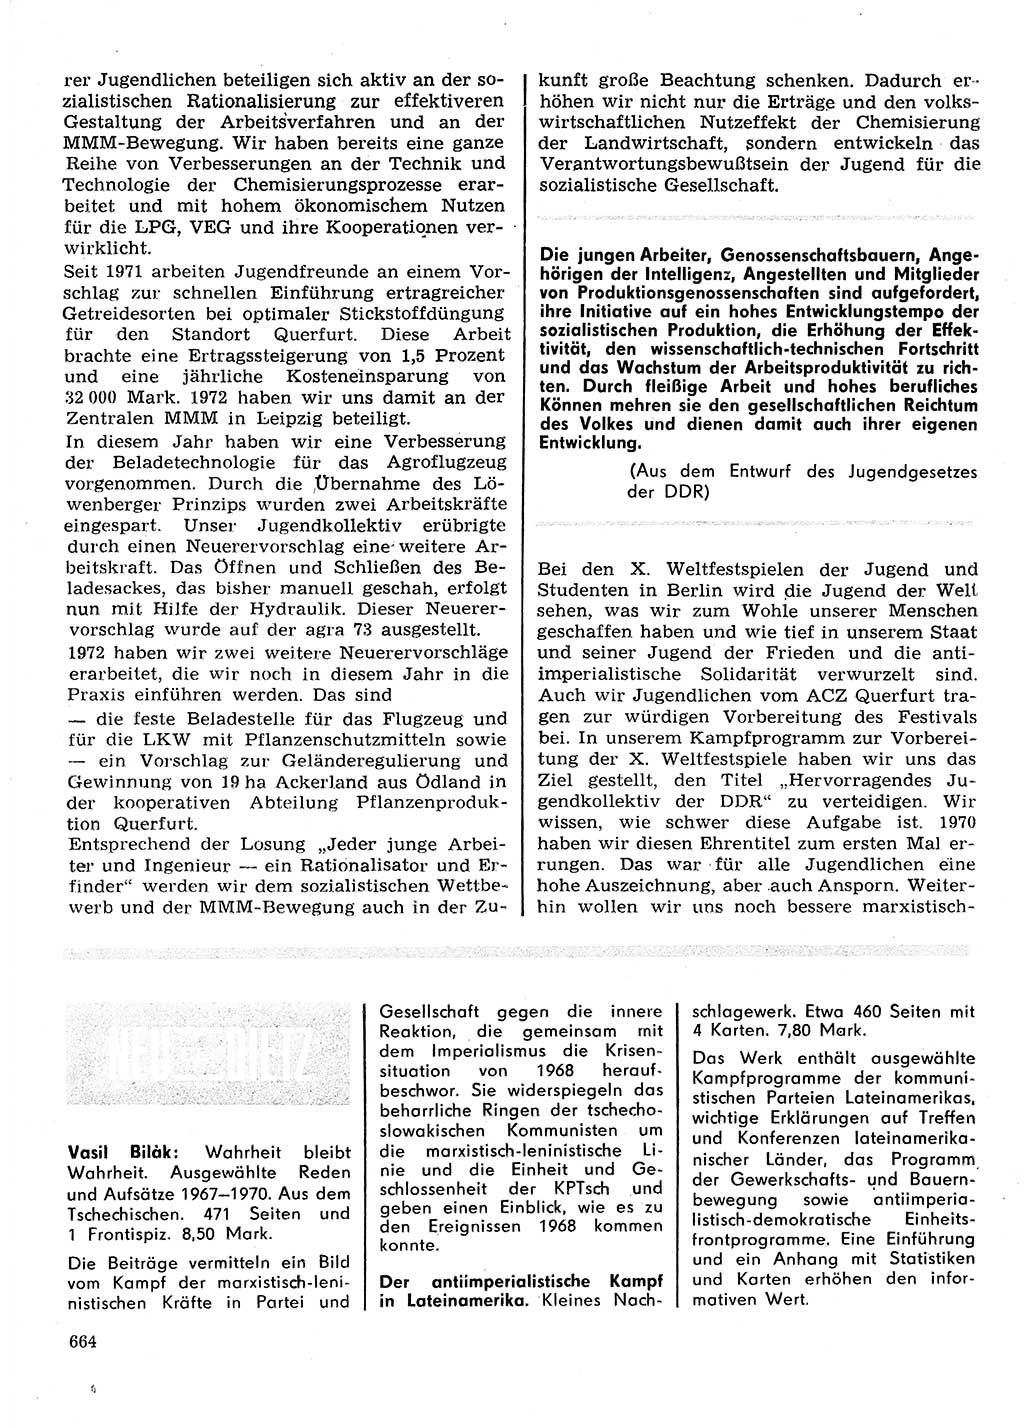 Neuer Weg (NW), Organ des Zentralkomitees (ZK) der SED (Sozialistische Einheitspartei Deutschlands) für Fragen des Parteilebens, 28. Jahrgang [Deutsche Demokratische Republik (DDR)] 1973, Seite 664 (NW ZK SED DDR 1973, S. 664)